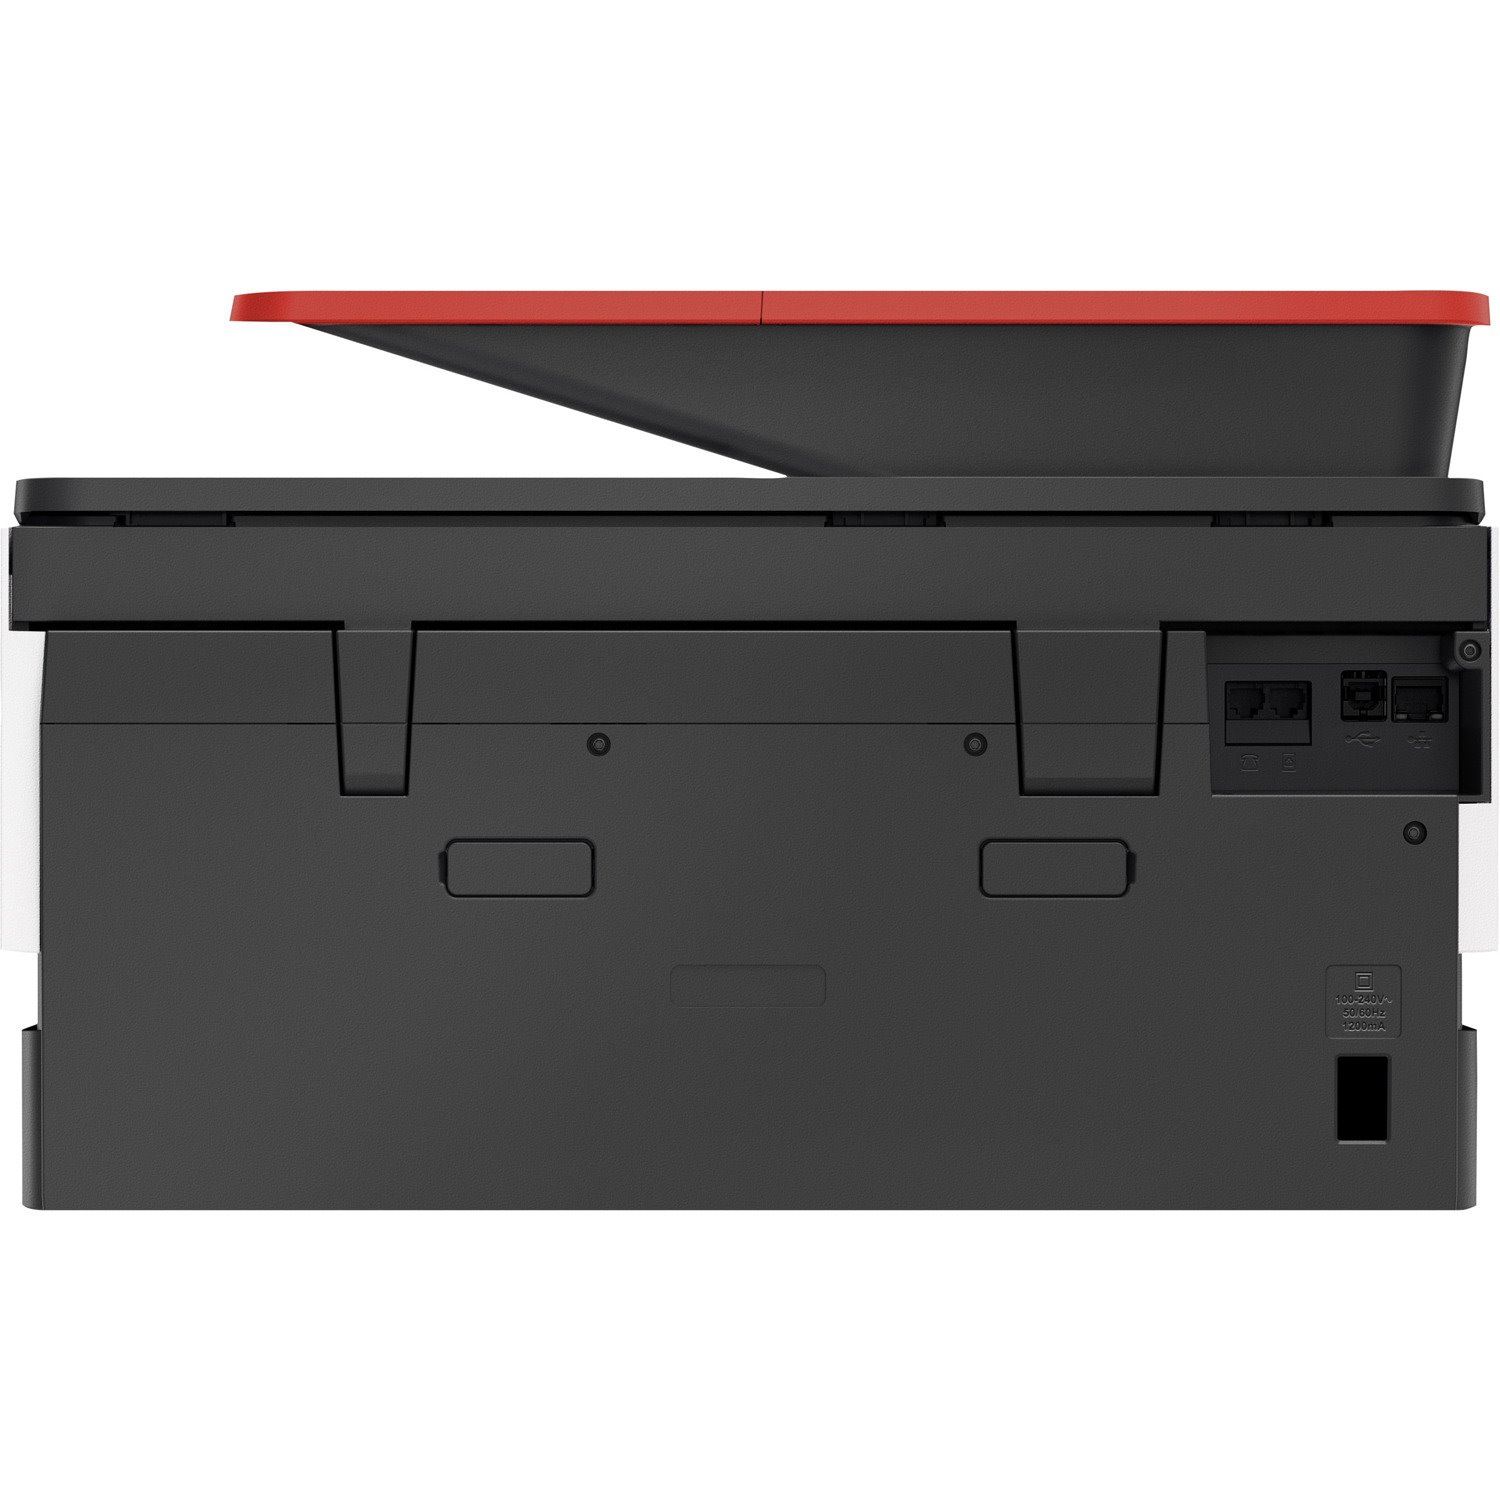 HP Officejet Pro 9016 Wireless Inkjet Multifunction Printer - Colour